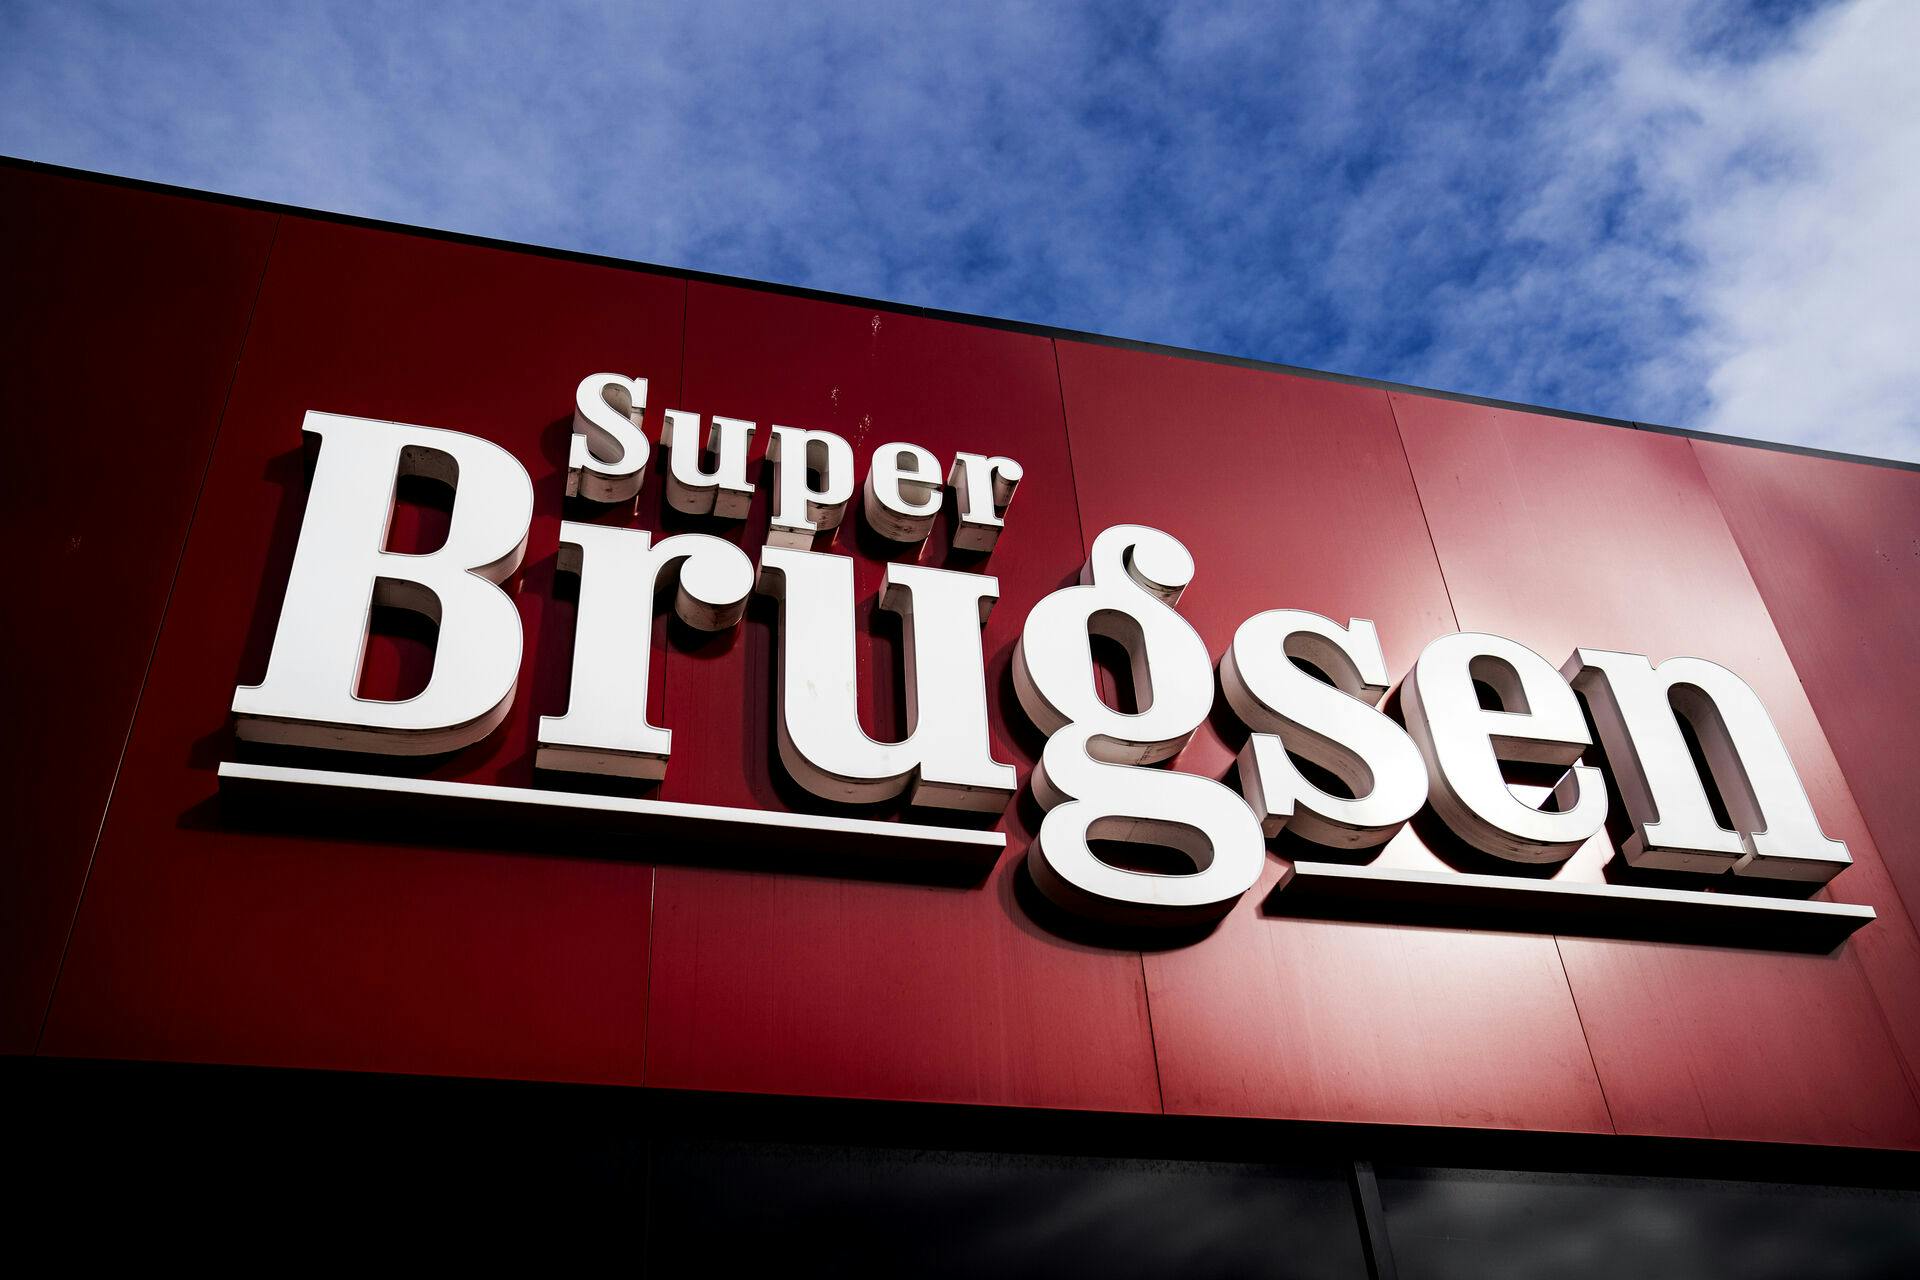 Super Brugsen har sat tape i gulvet for at markere afstand mellem kunderne, i Brøndby tirsdag den 17. marts 2020. Det skal mindske smitterisikoen.. (Foto: Ida Guldbæk Arentsen/Ritzau Scanpix)